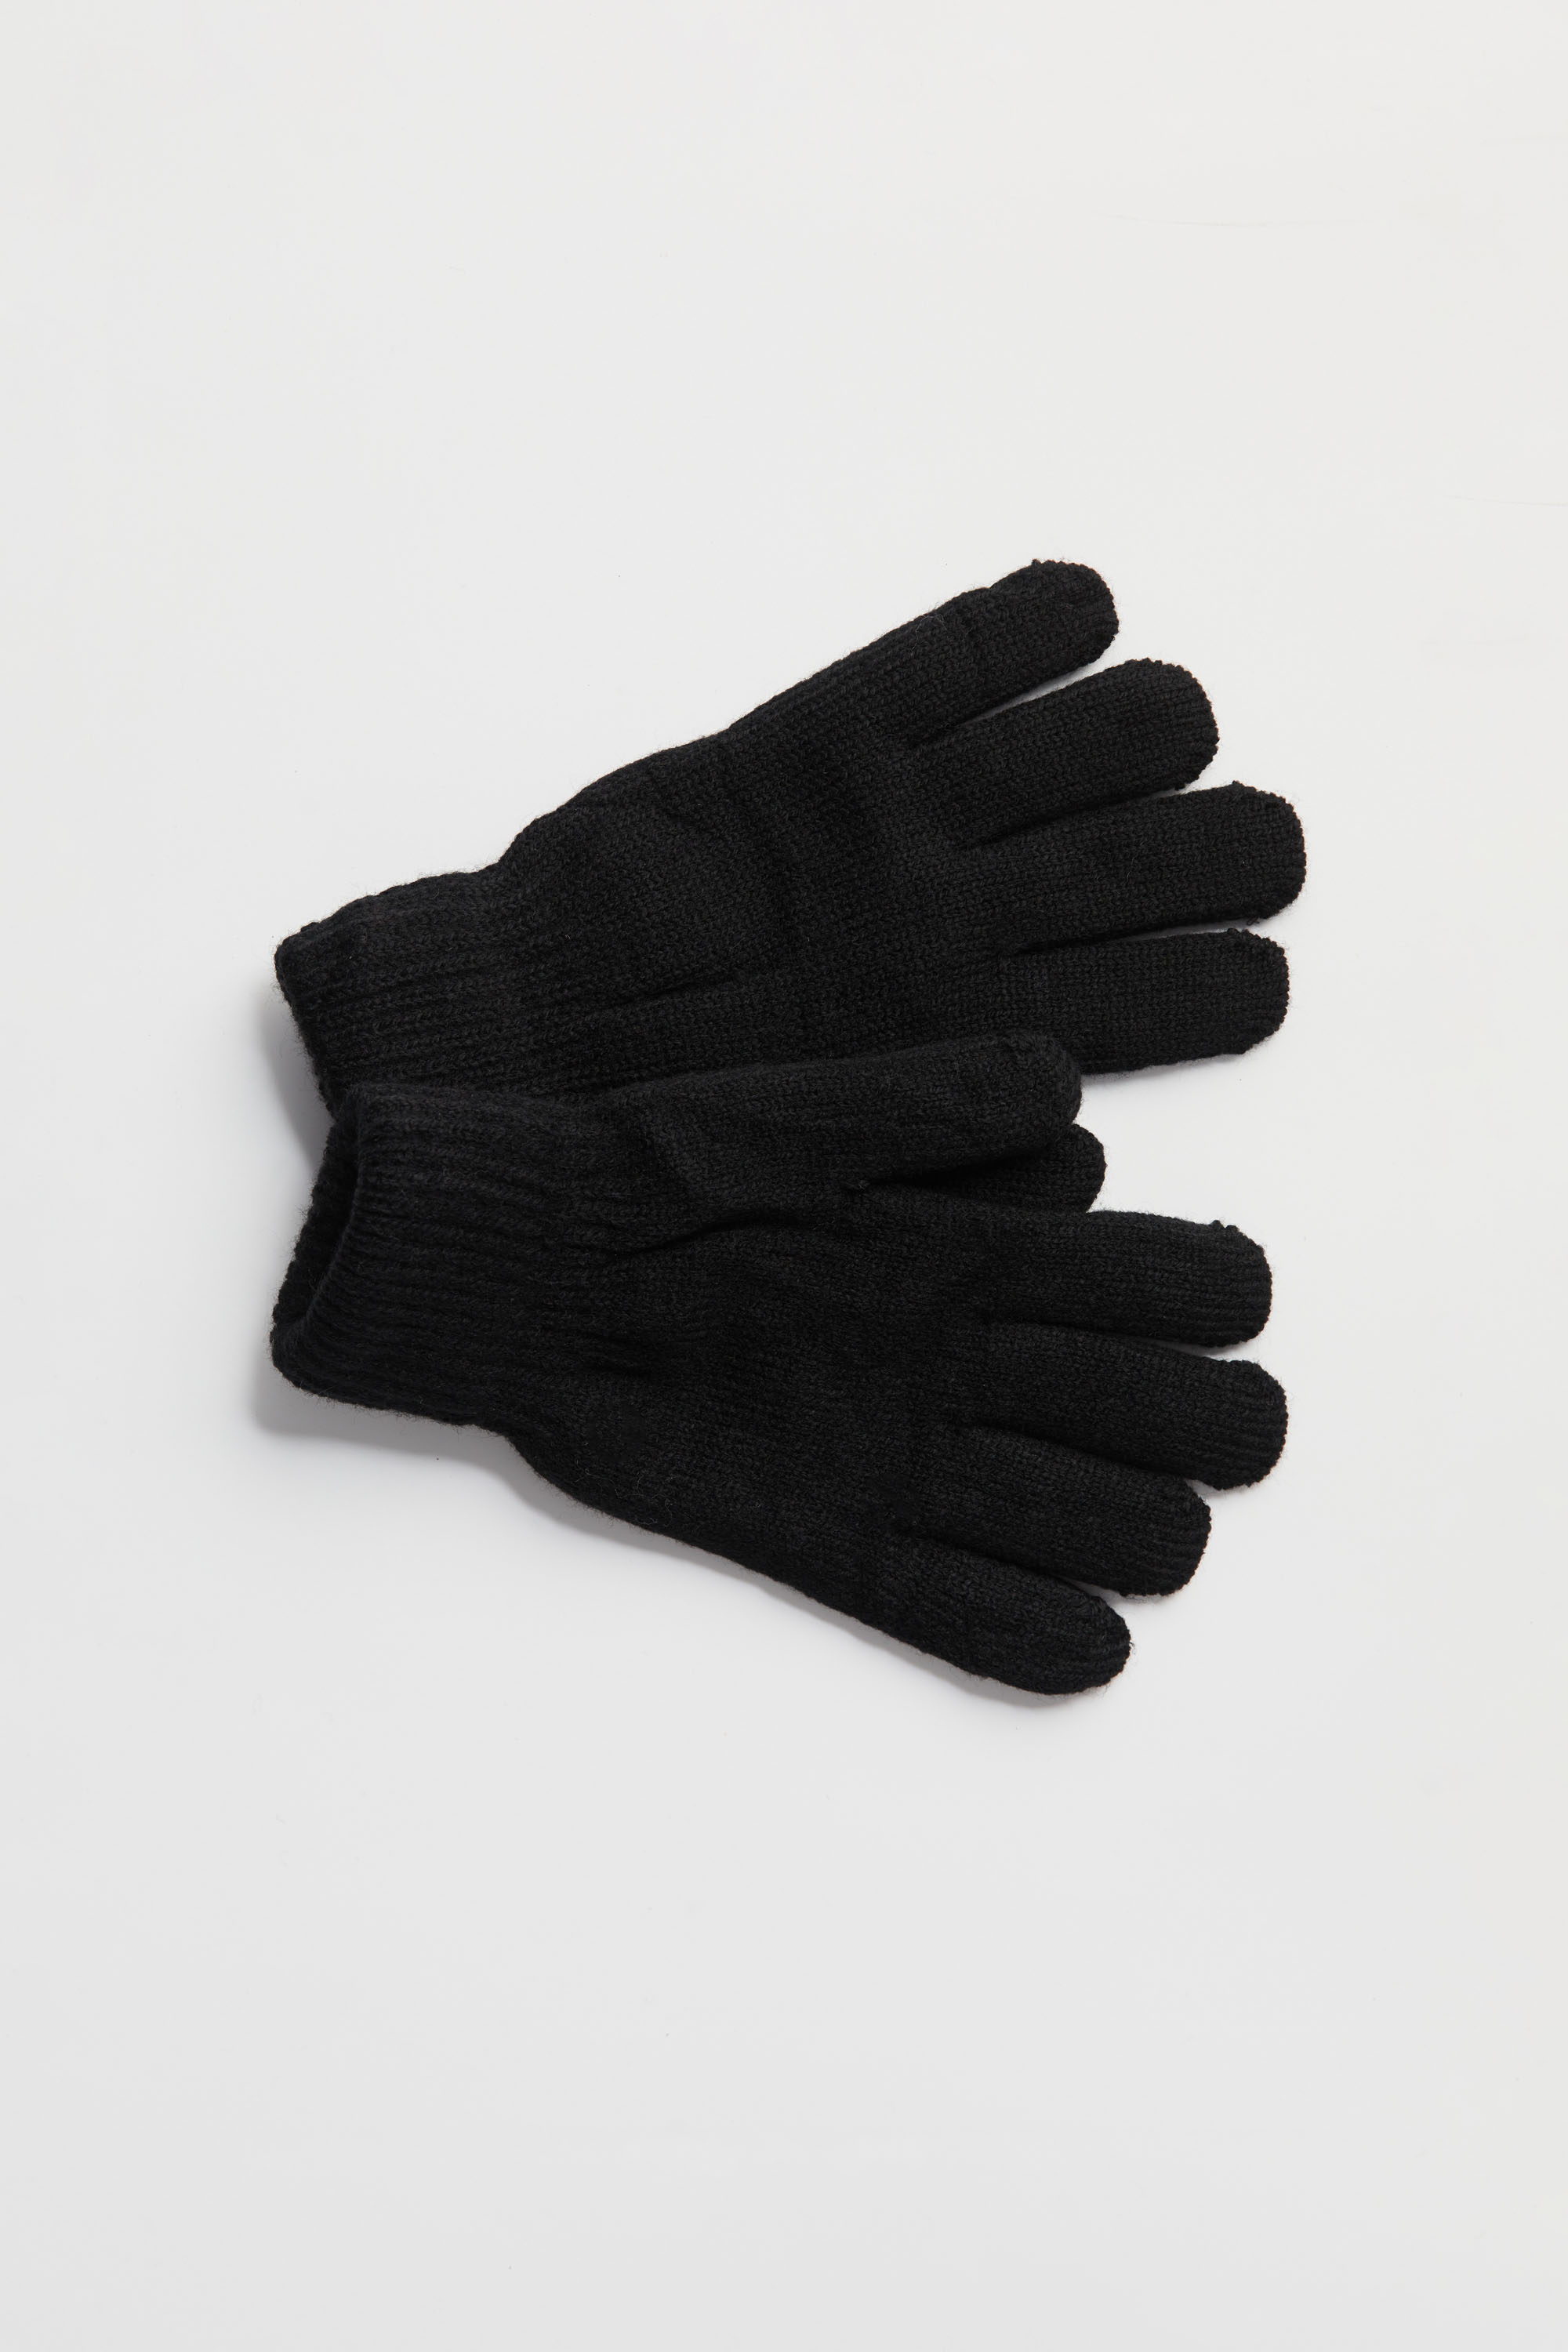 Knit Gloves In Black | Aristoteli Bitsiani